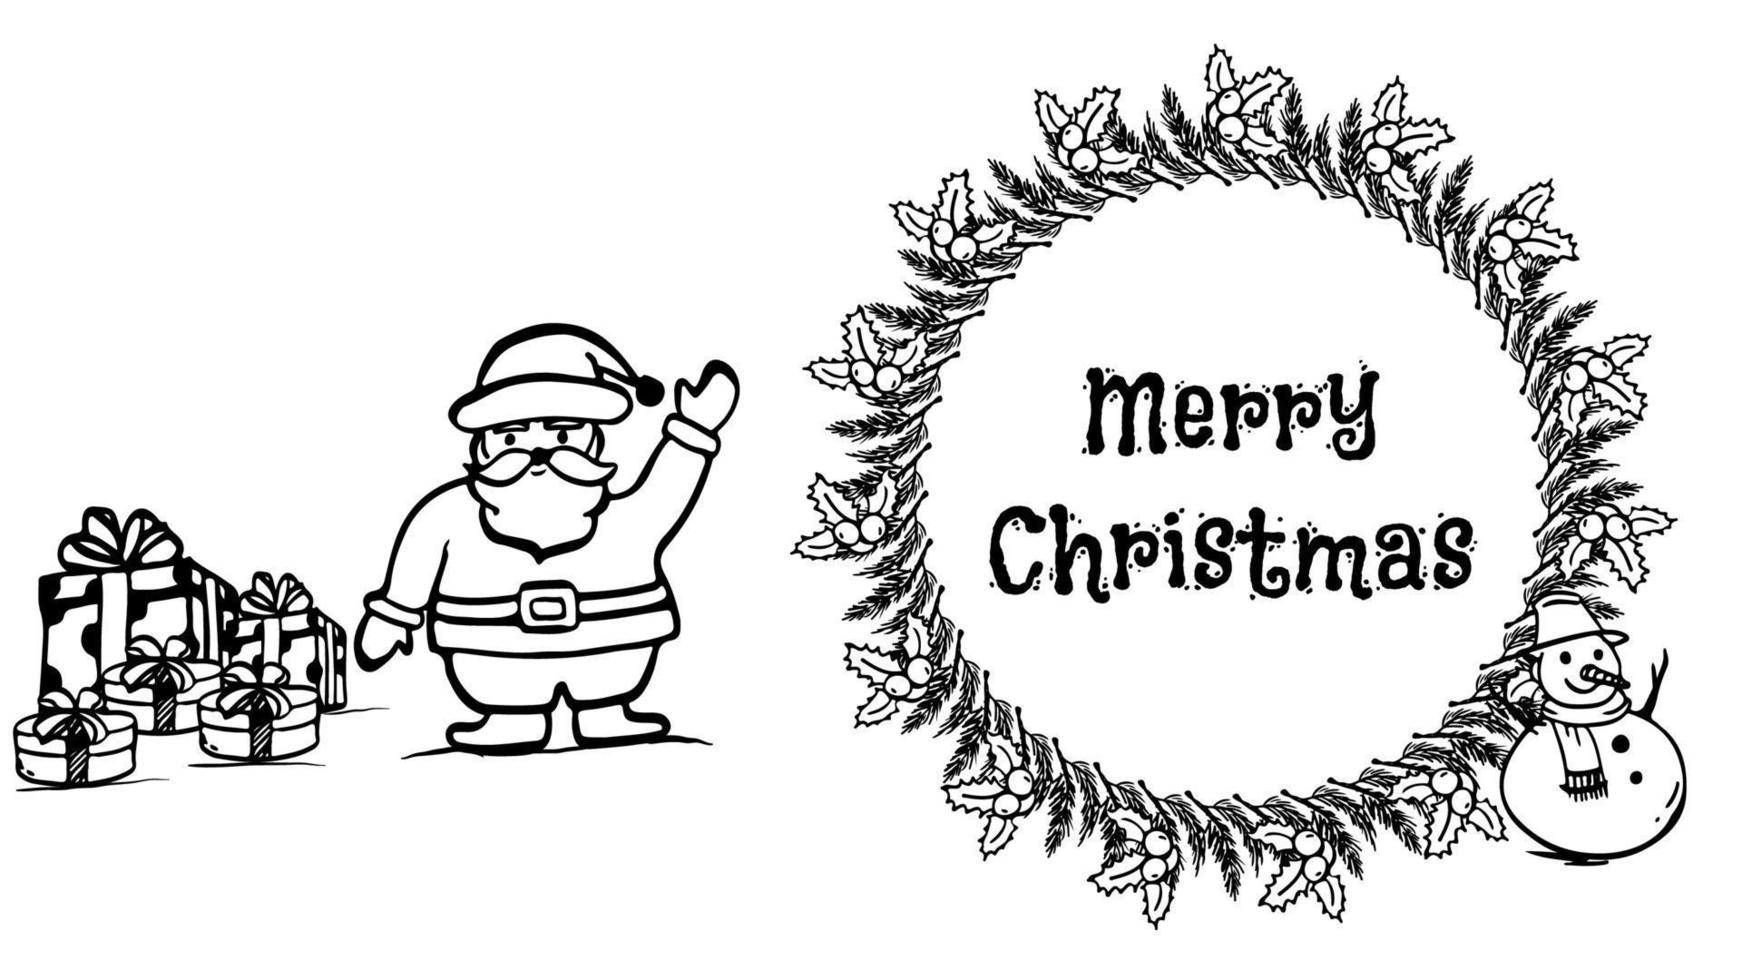 ilustración de vector de navidad dibujada a mano creada con santa claus, muñeco de nieve, cajas de regalo y objetos de corona de navidad. Feliz Navidad